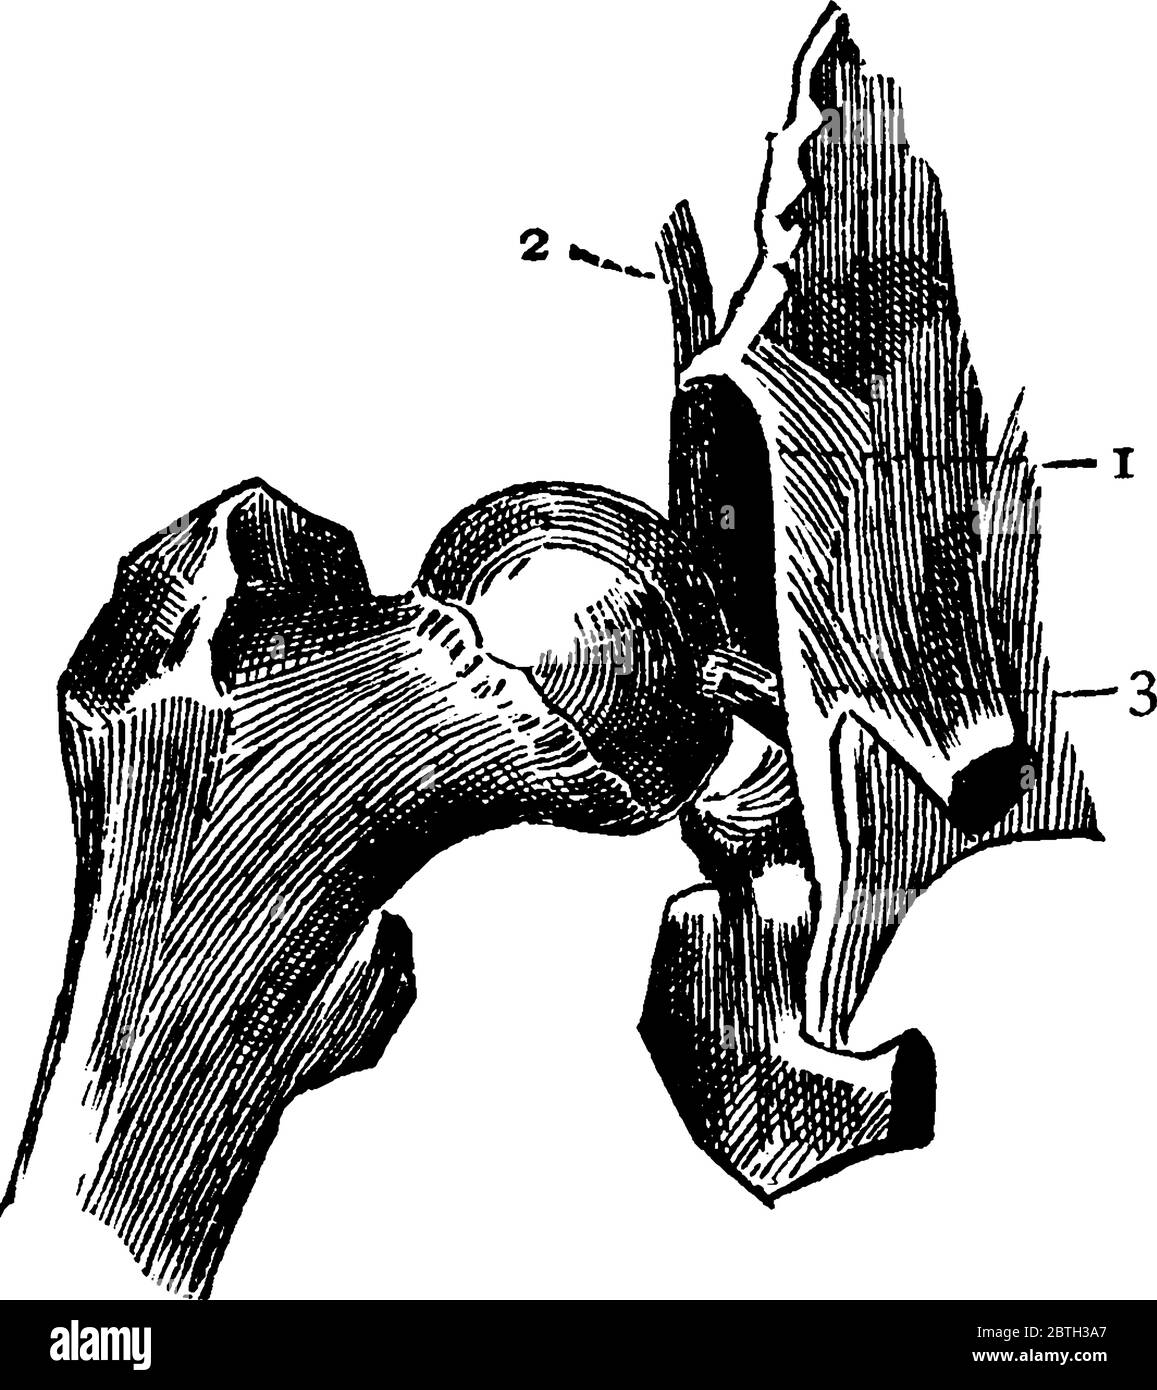 Hüftgelenk mit abgeschnittendem Kapselband, mit Markierungen, '1, 2 und 3', die den Rand der Muffe, den Teil des Kapselbandes und das runde Band darstellen Stock Vektor